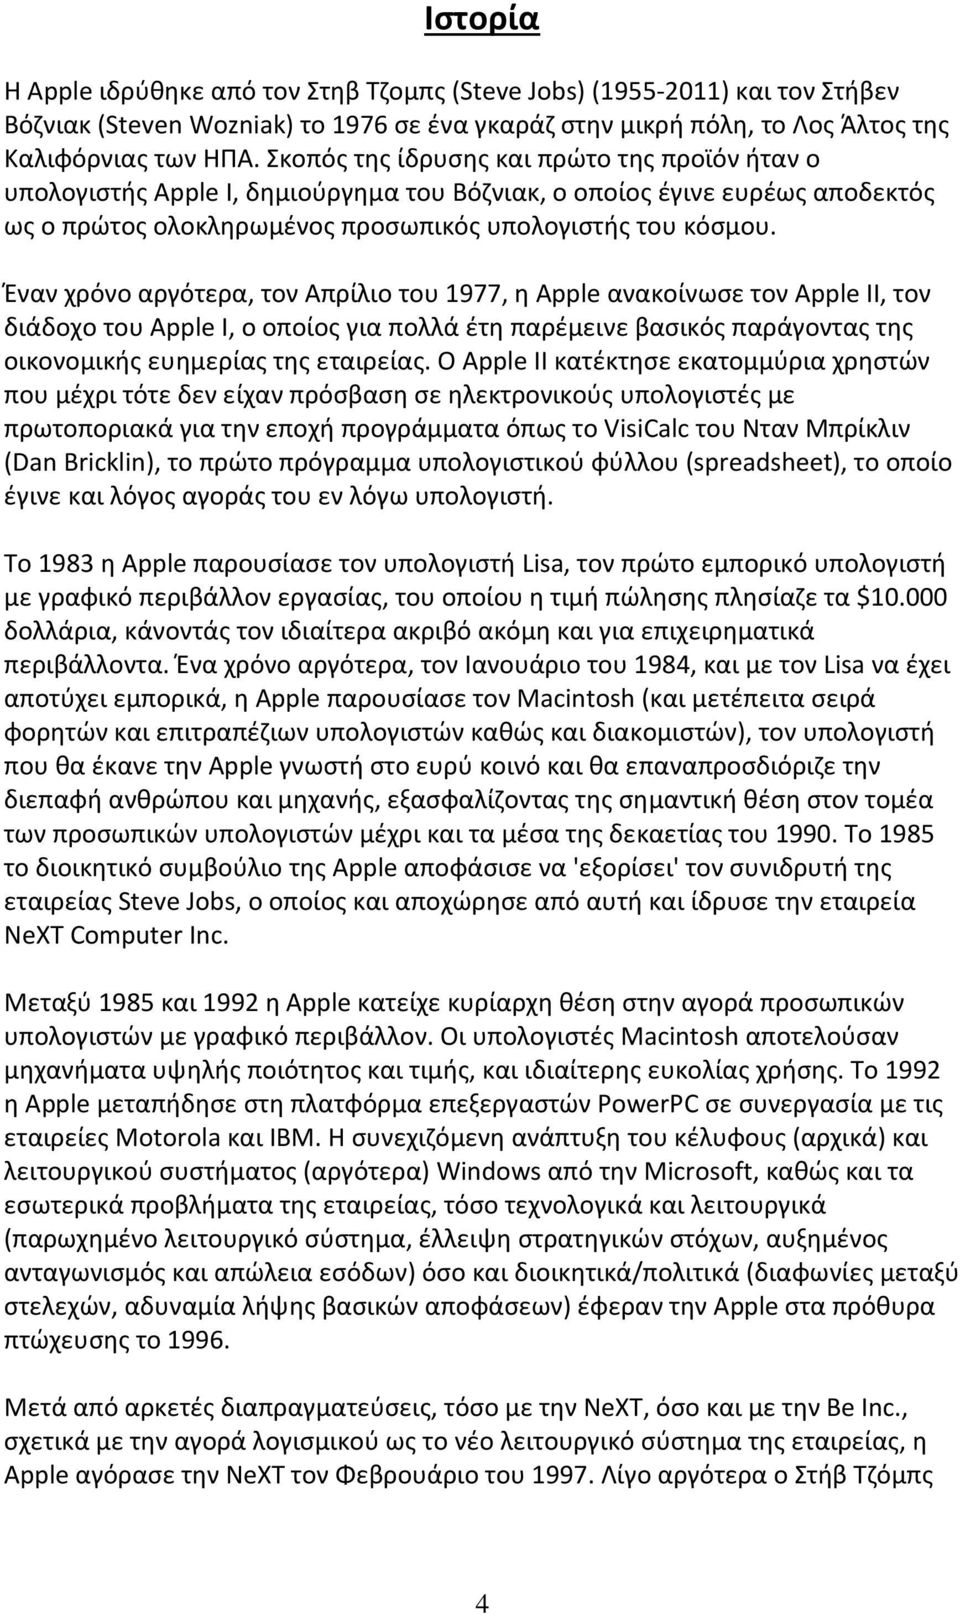 Έναν χρόνο αργότερα, τον Απρίλιο του 1977, η Apple ανακοίνωσε τον Apple II, τον διάδοχο του Apple I, ο οποίος για πολλά έτη παρέμεινε βασικός παράγοντας της οικονομικής ευημερίας της εταιρείας.